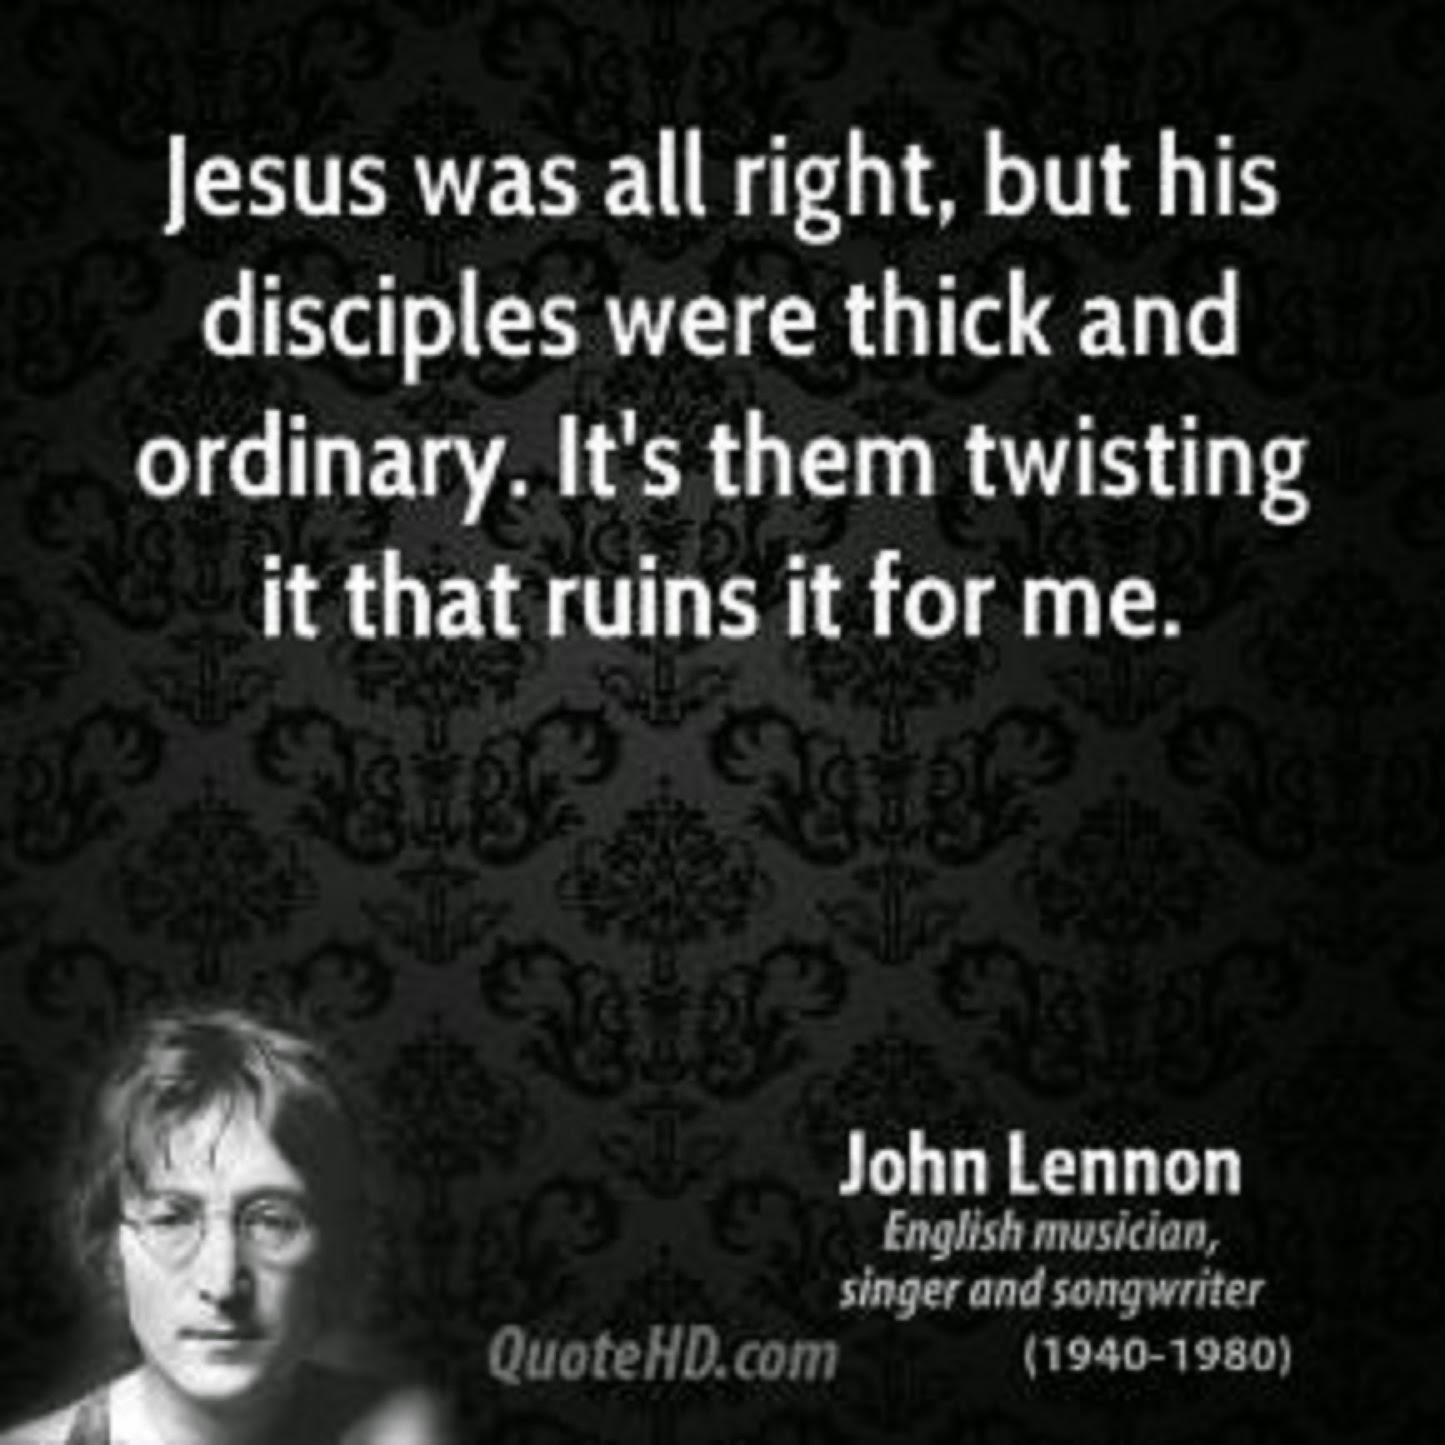 BEATLE JOHN LENNON ATTACKS JESUS SOME MORE